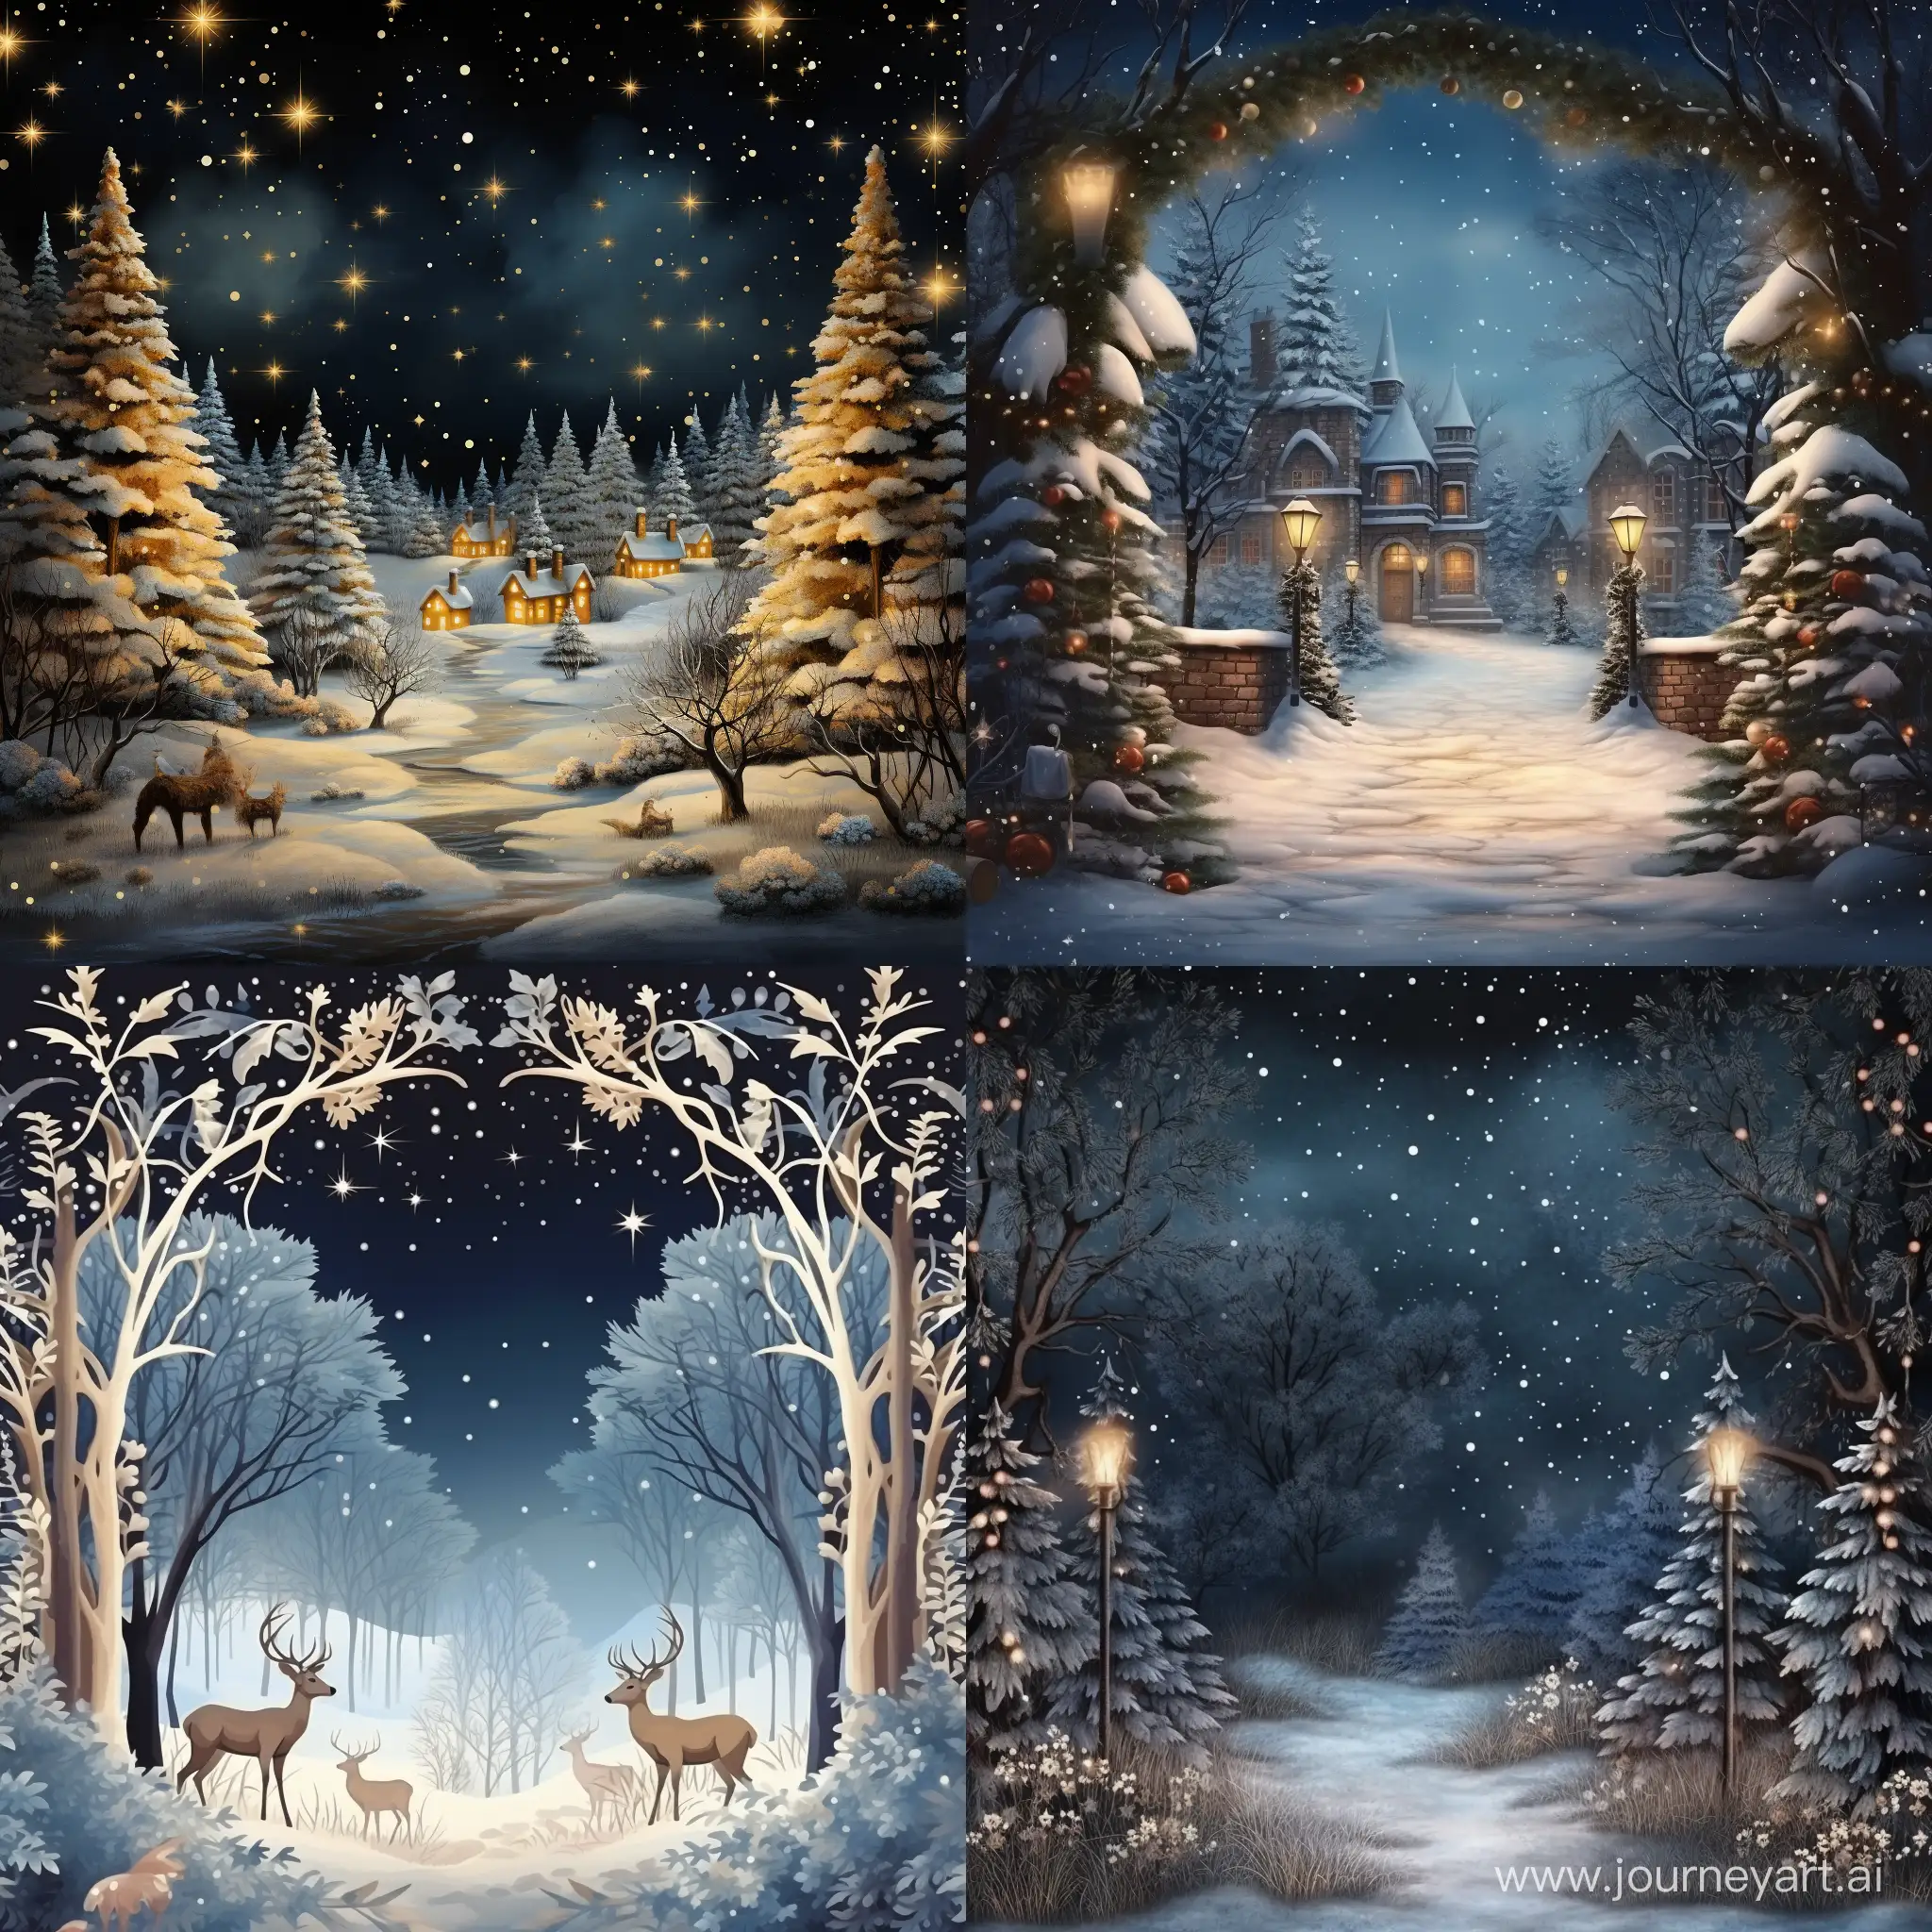 Festive-Christmas-Scene-for-Greeting-Card